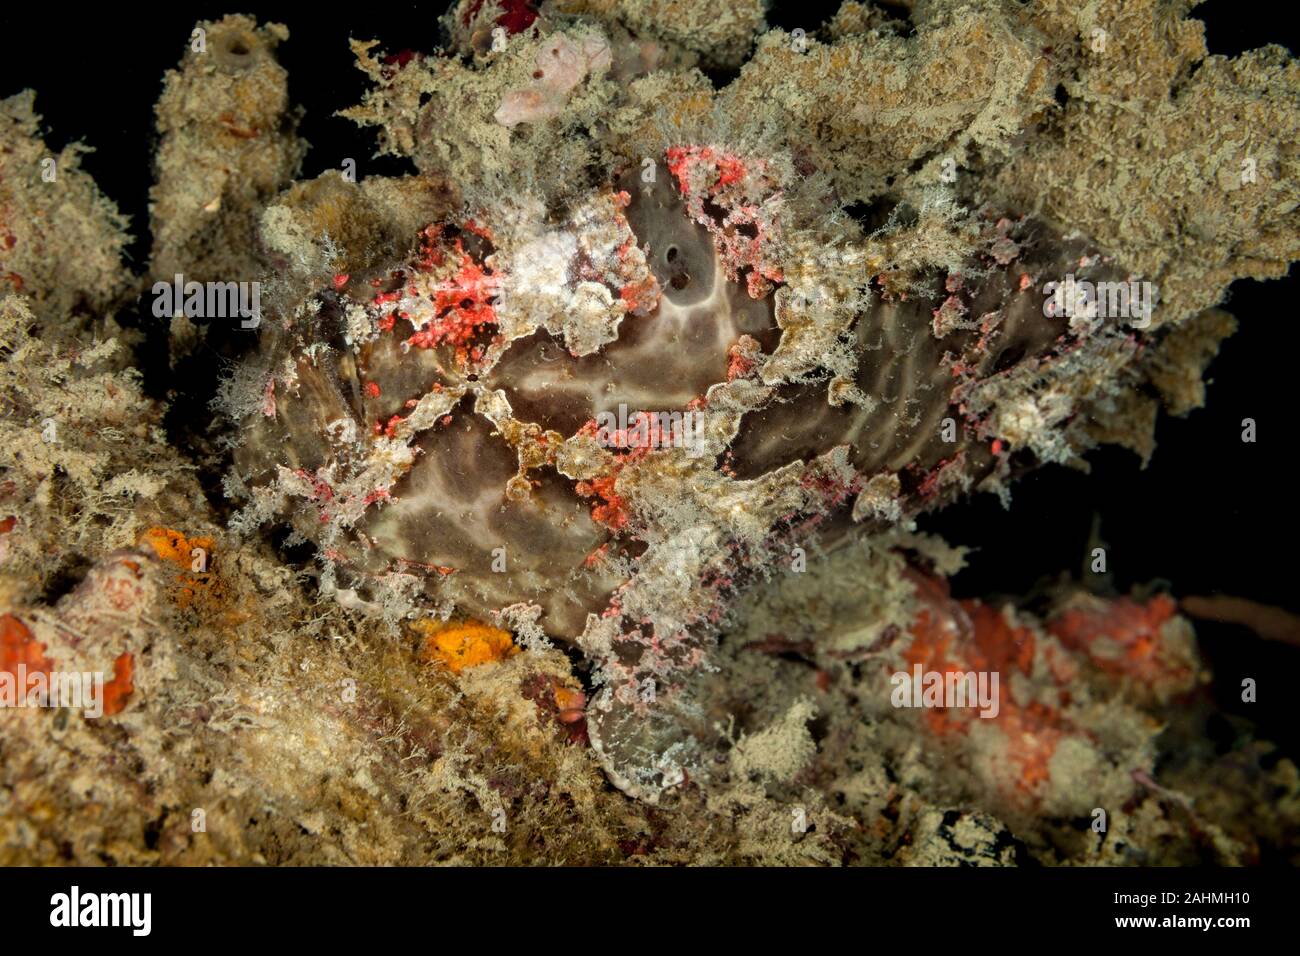 Commerson's frogfish o el gigante, Antennarius commerson frogfish Foto de stock